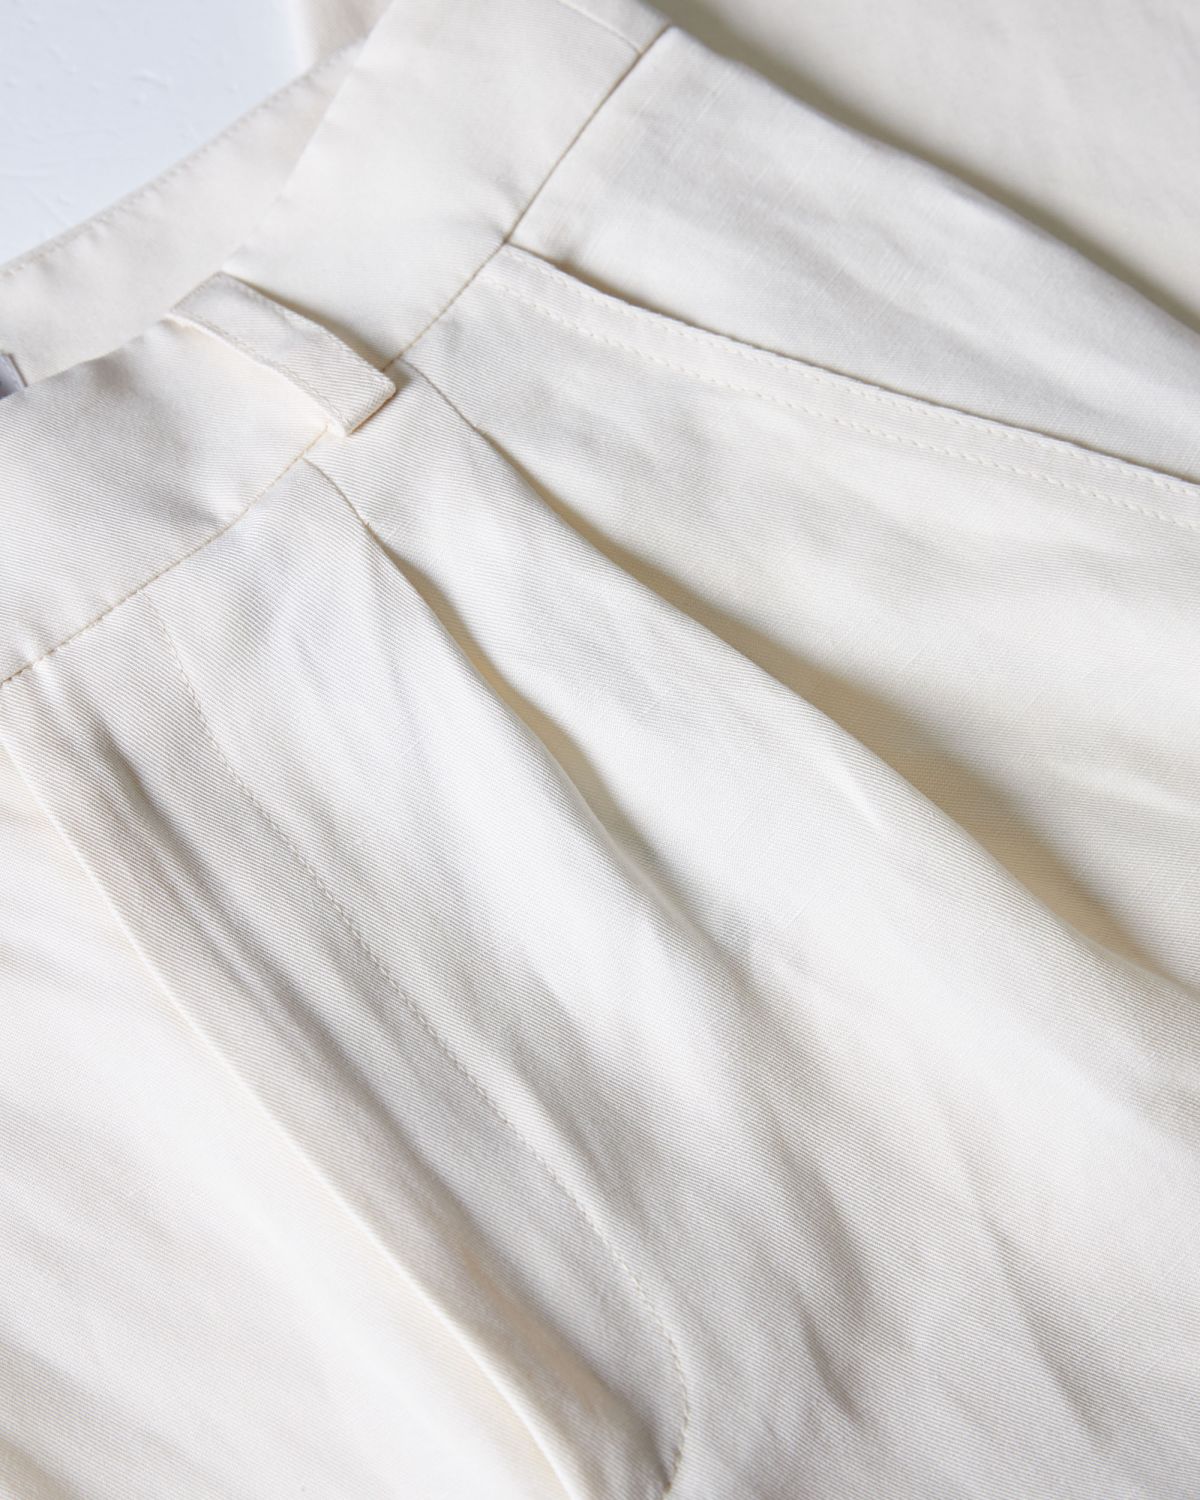 Pantalone Bianco